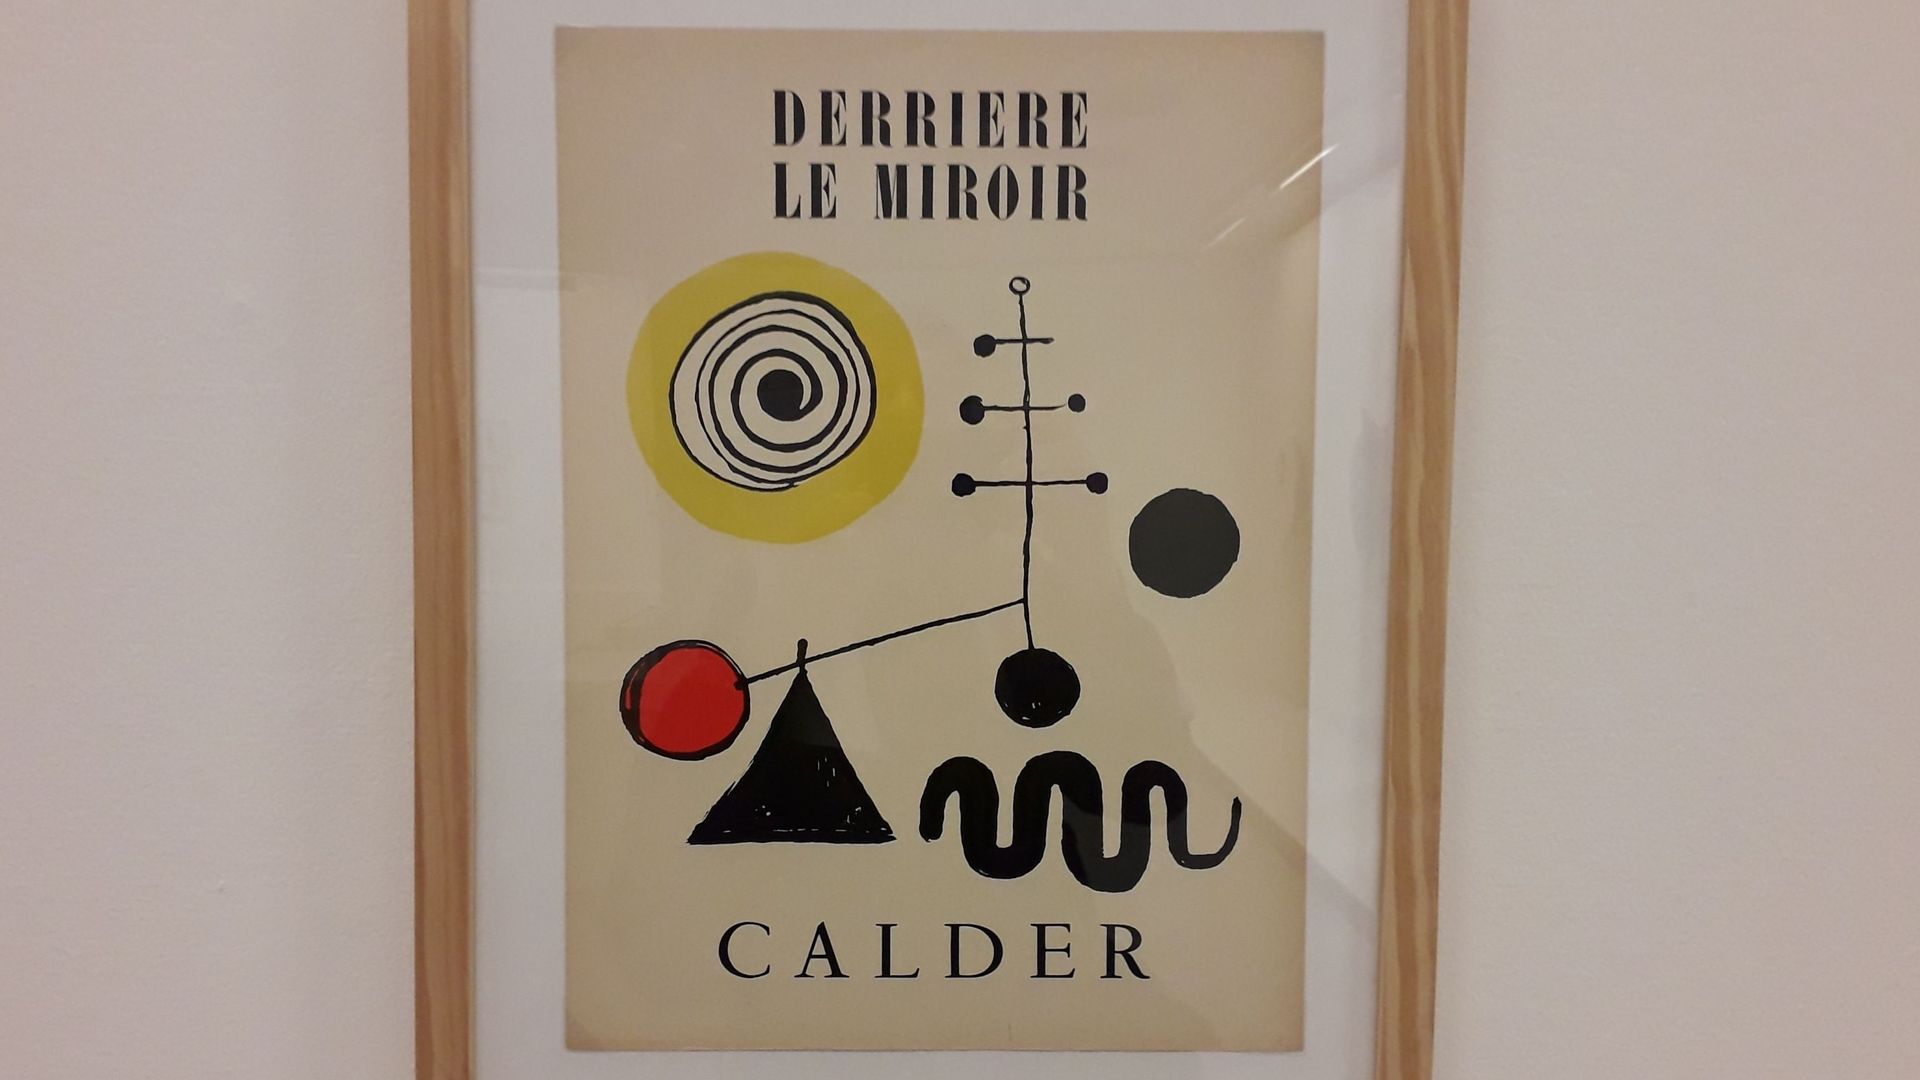 Pol Bury, "Calder", Derrière le miroir, n°31, juillet 1950